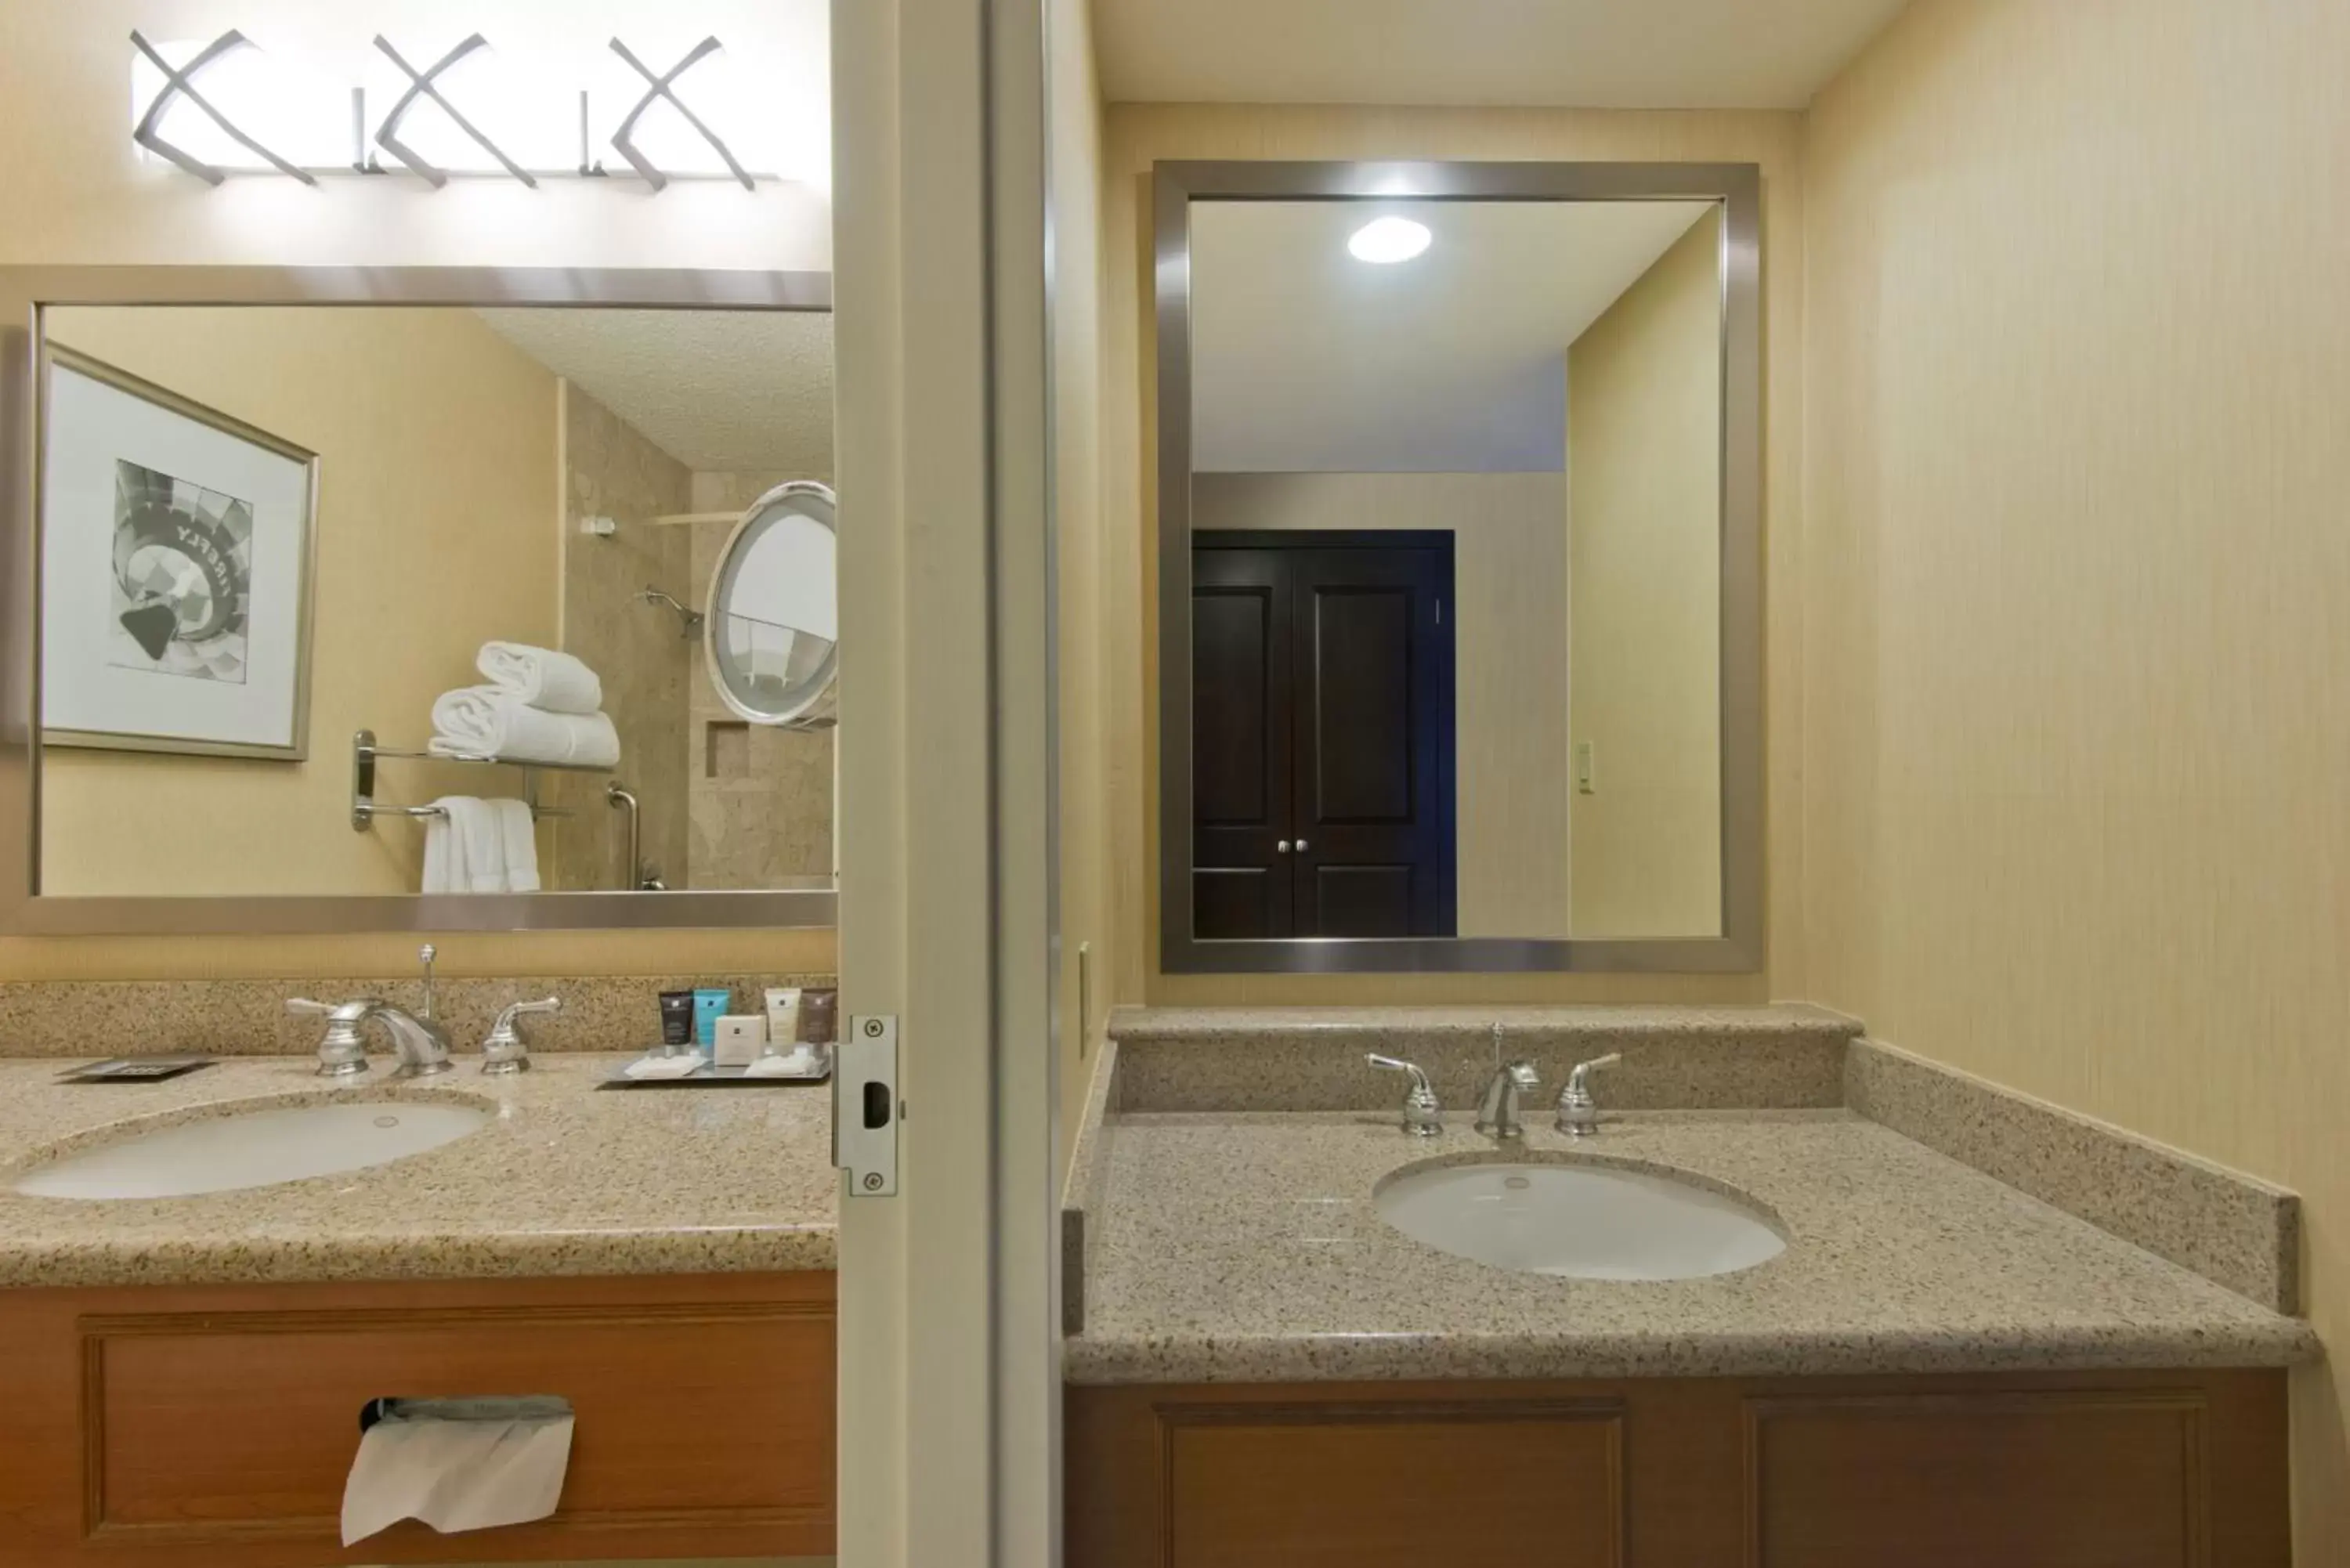 Bedroom, Bathroom in Crowne Plaza Albuquerque